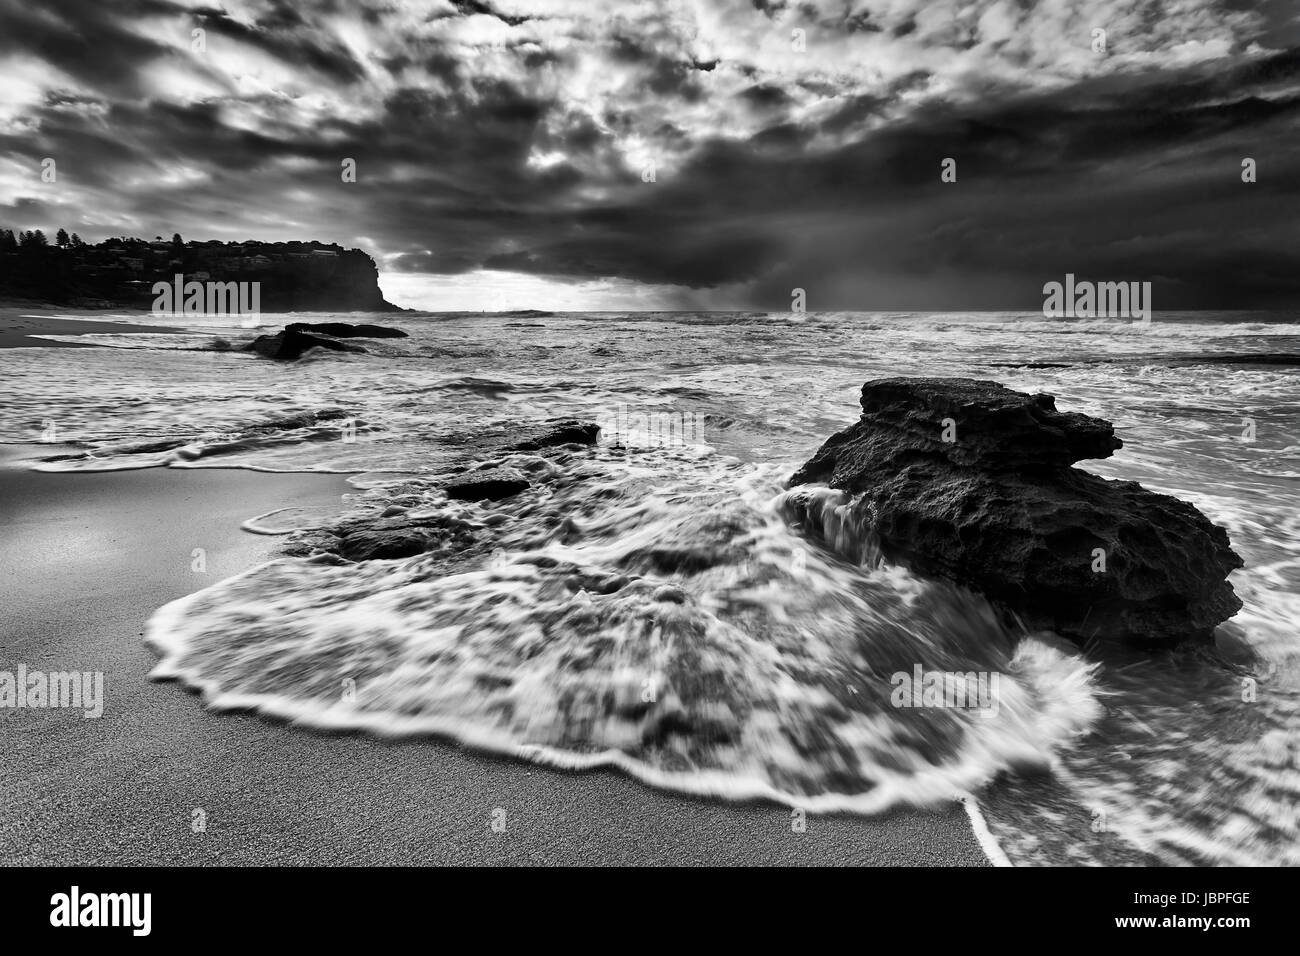 Vague de marée rapide déborde sur une plage de rochers de grès Bungan beach plages du nord de Sydney au lever du soleil pendant une tempête. Banque D'Images